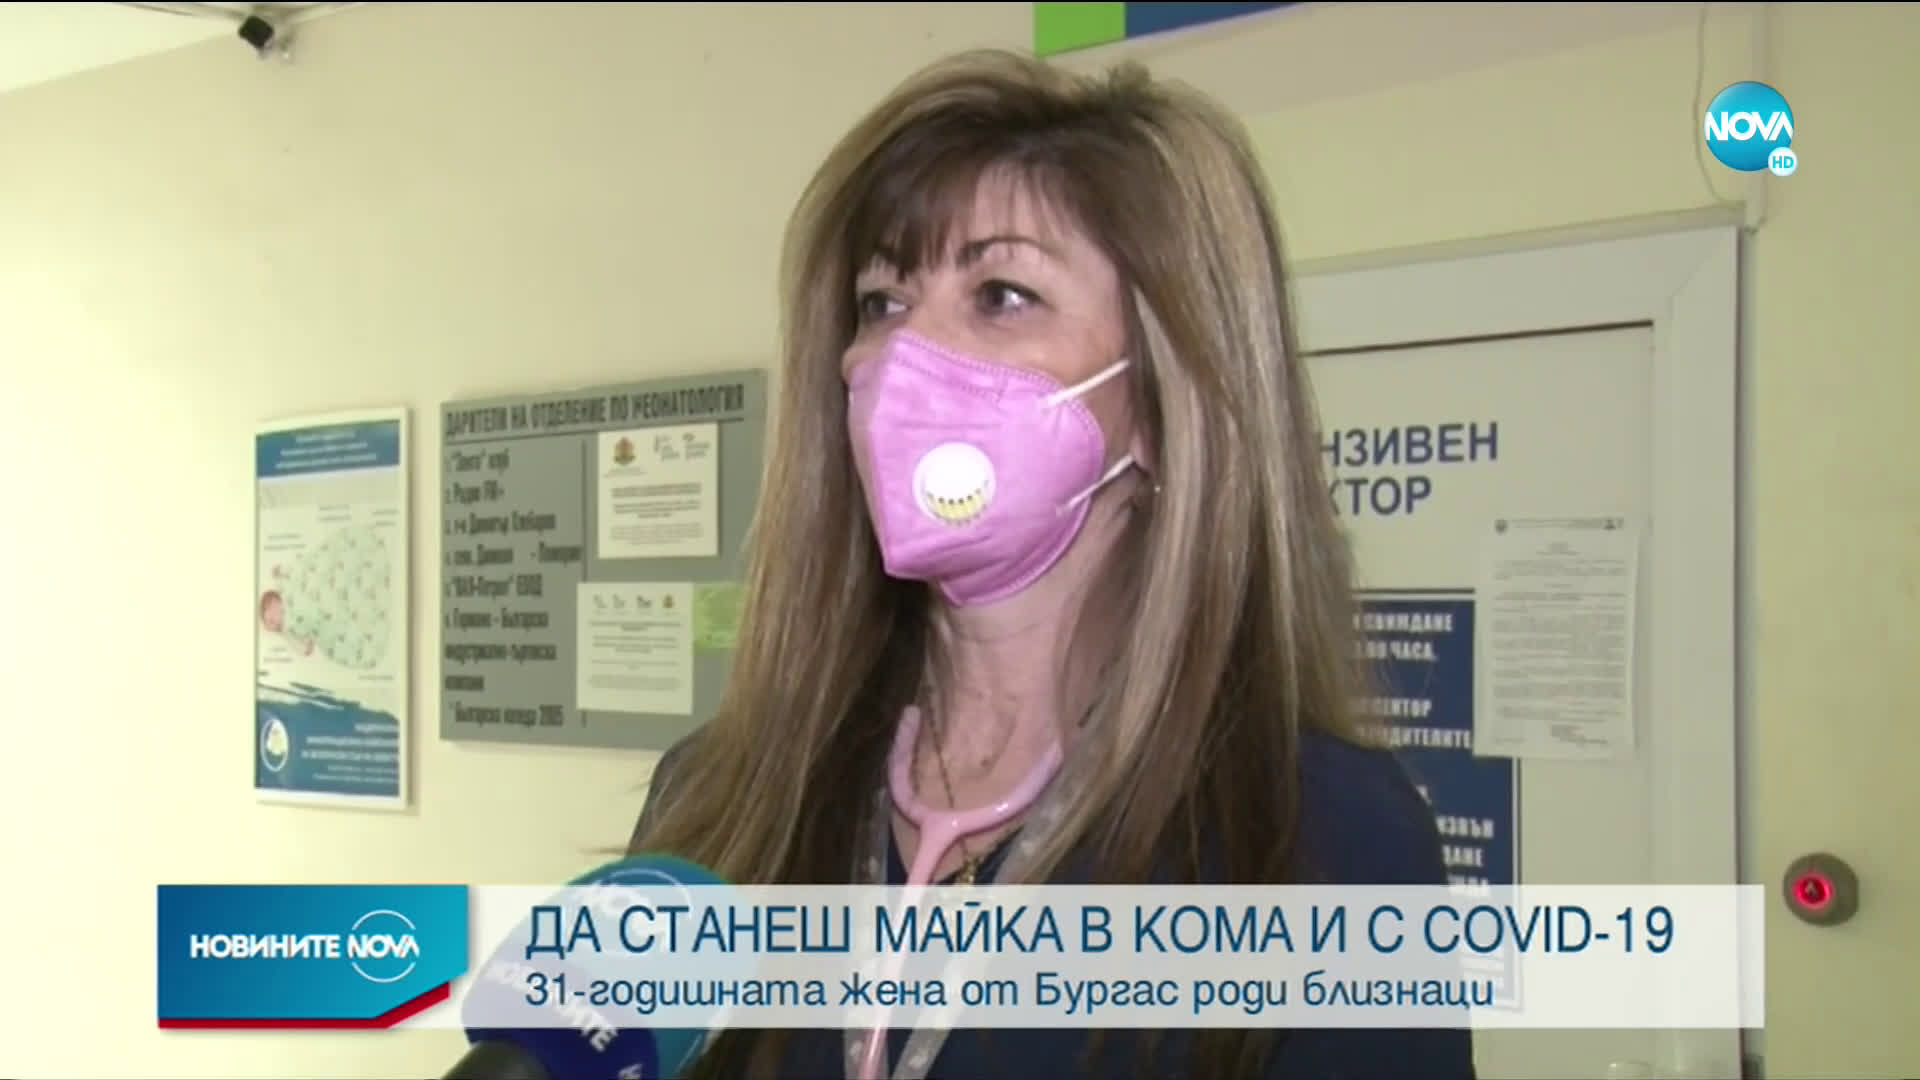 Жена в медикаментозна кома с COVID-19 роди близнаци в Бургас